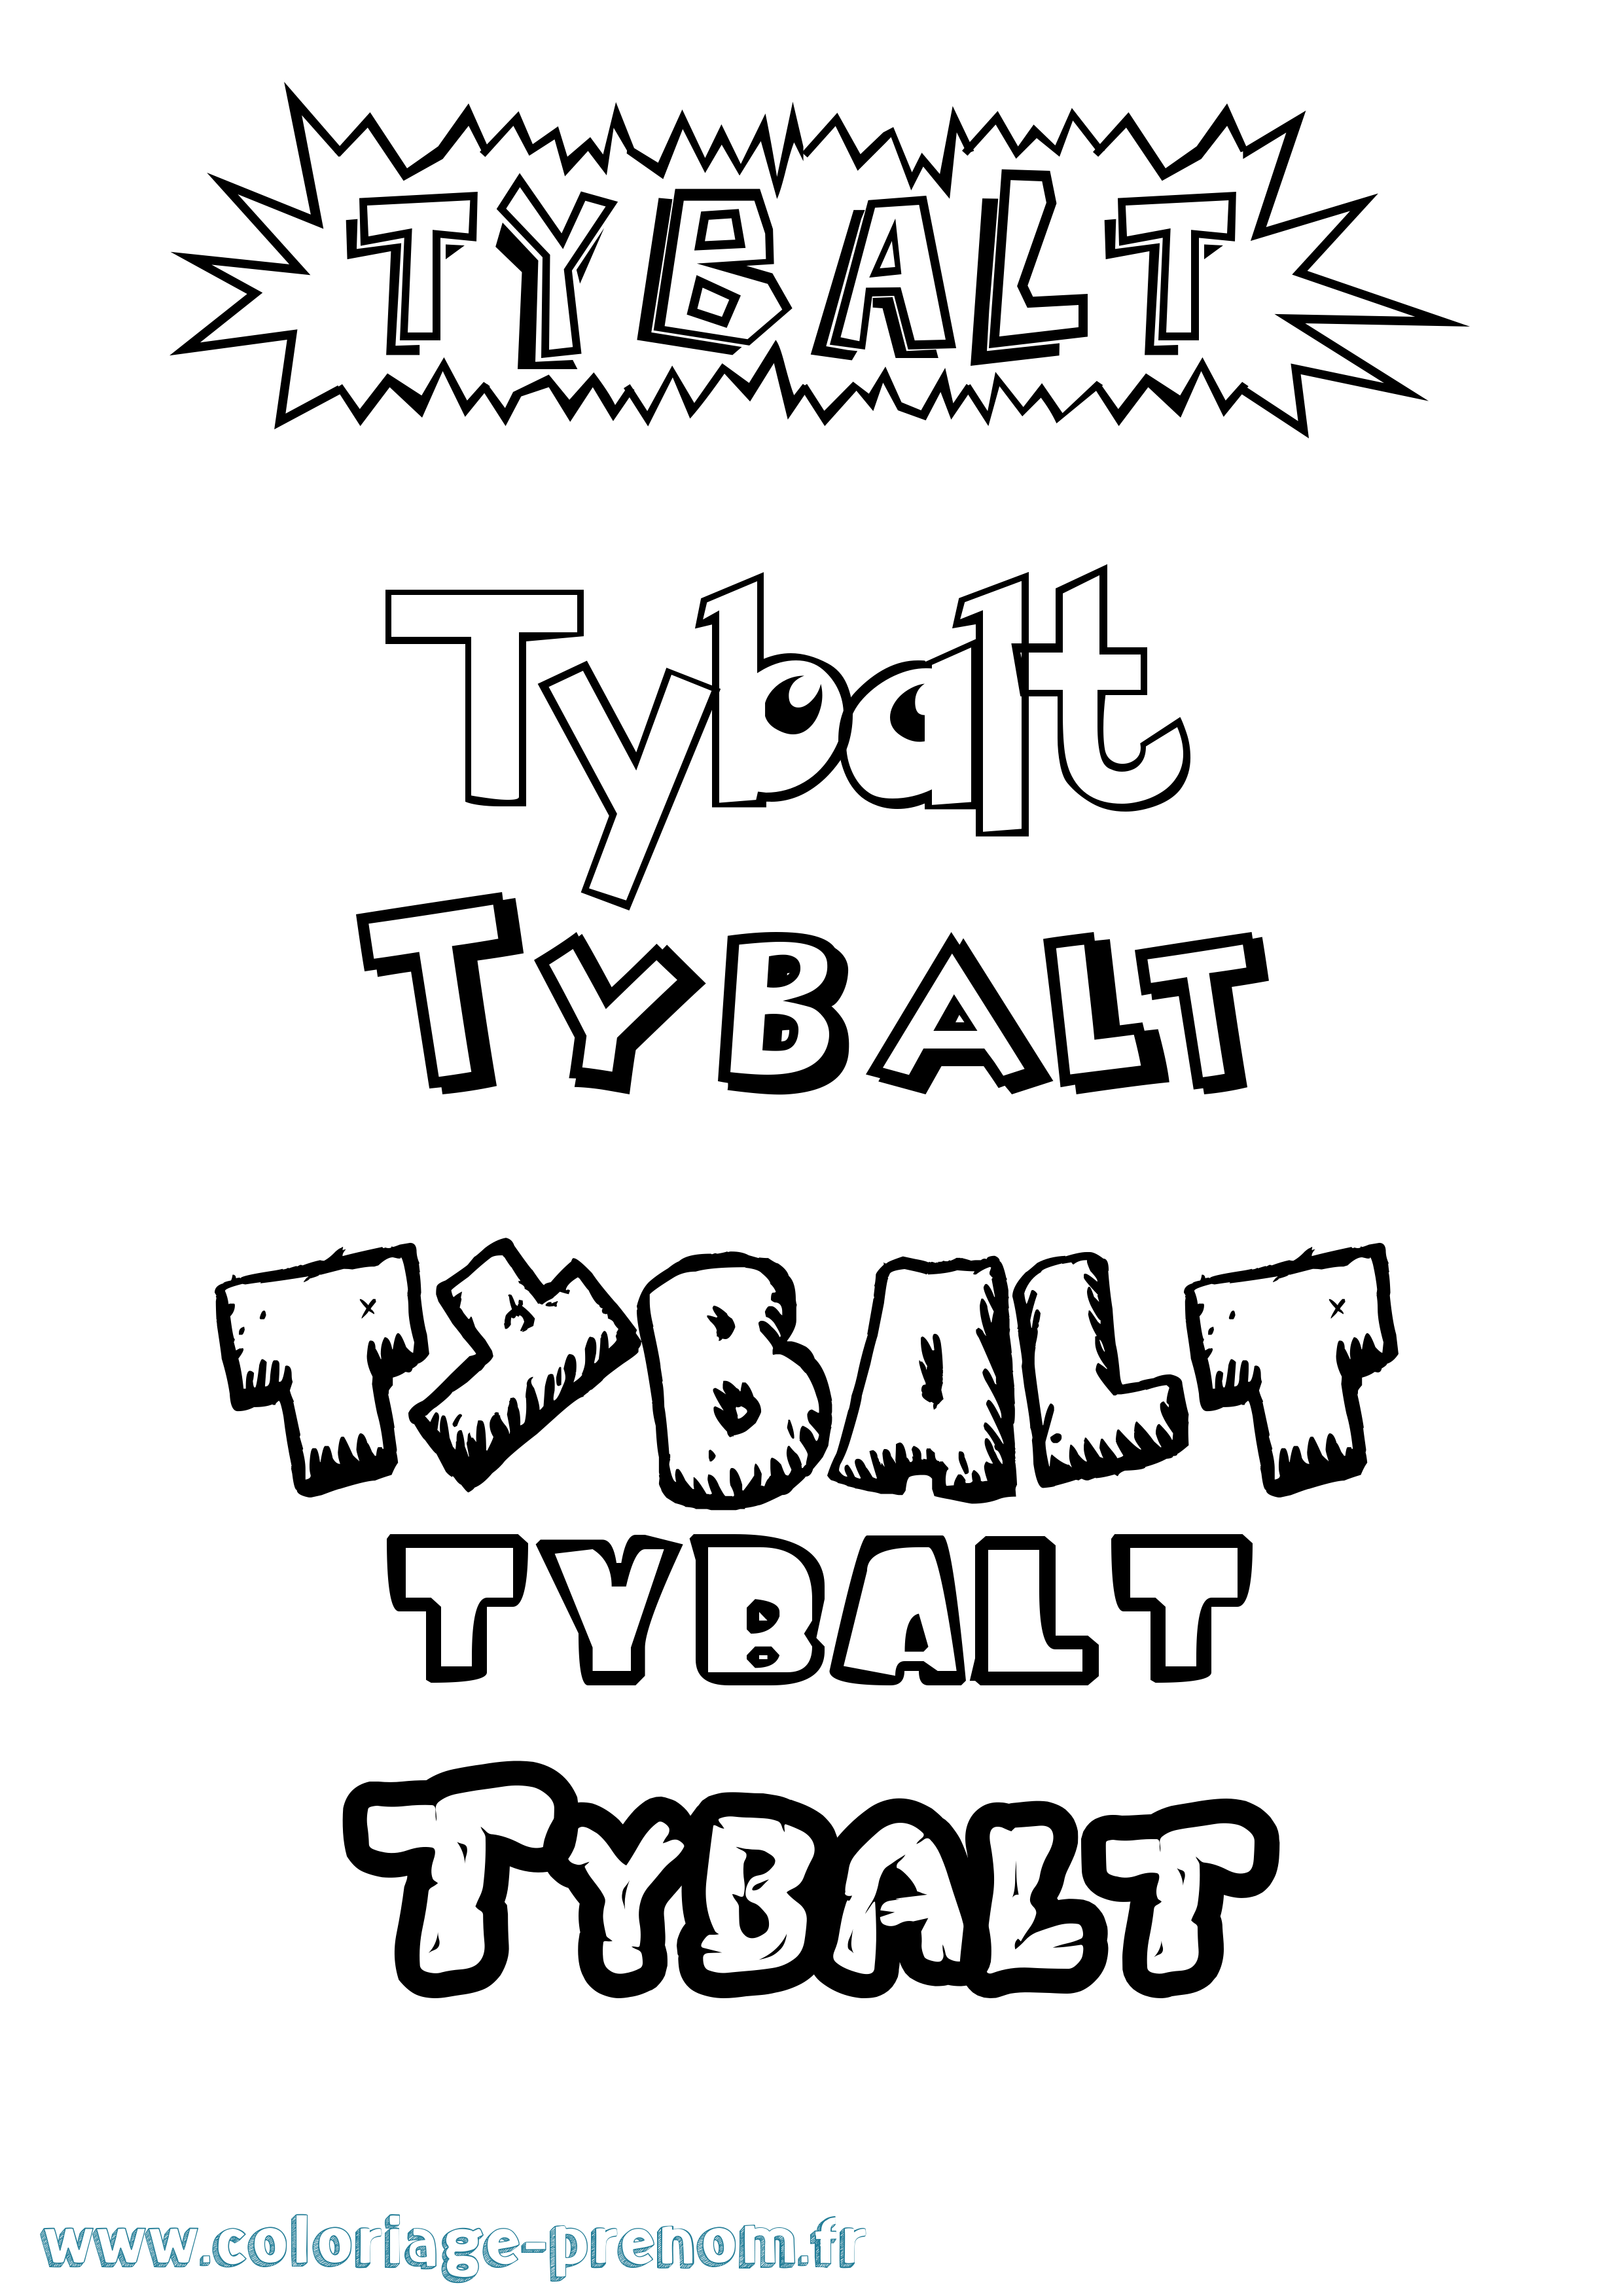 Coloriage prénom Tybalt